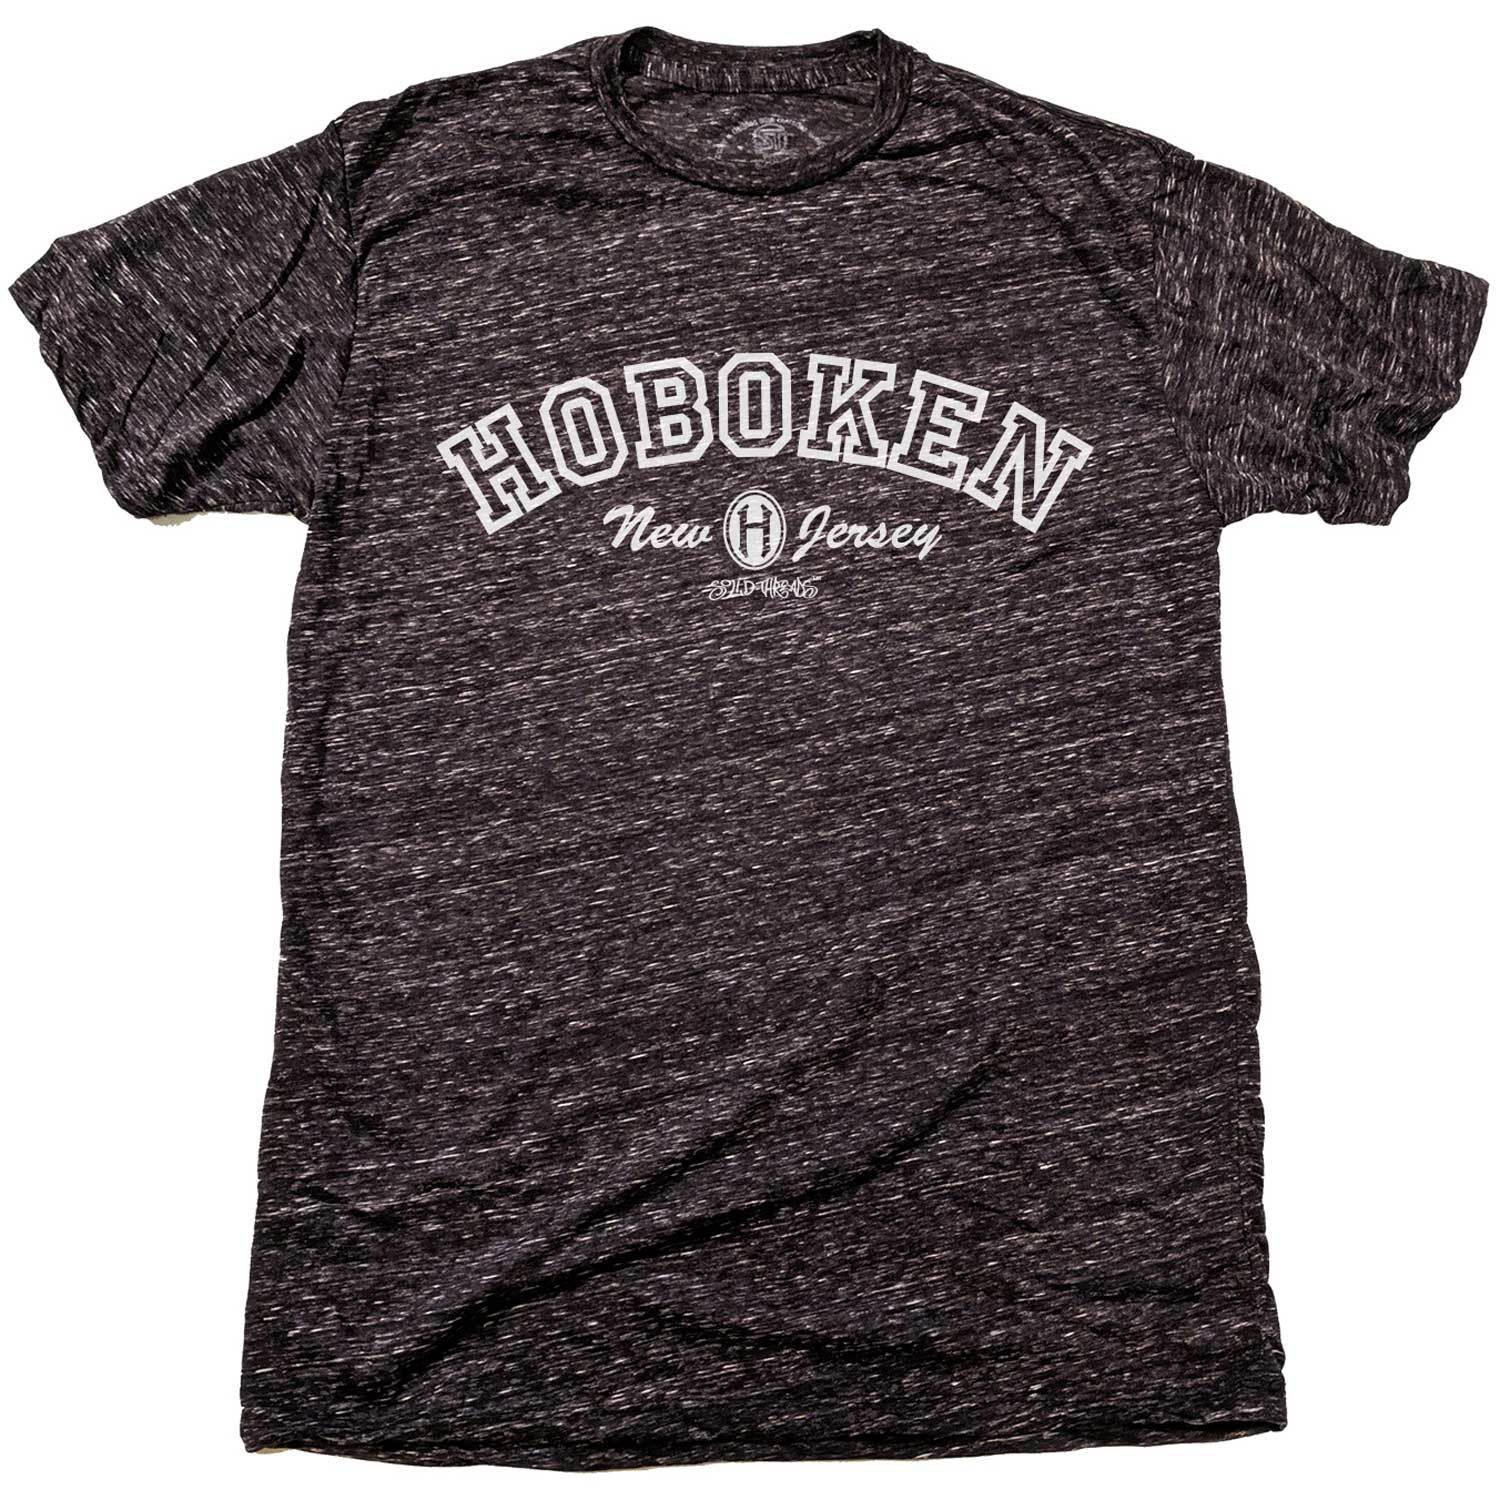 Men's Hoboken Collegiate Cool Graphic T-Shirt | Vintage New Jersey Pride Tee | Solid Threads